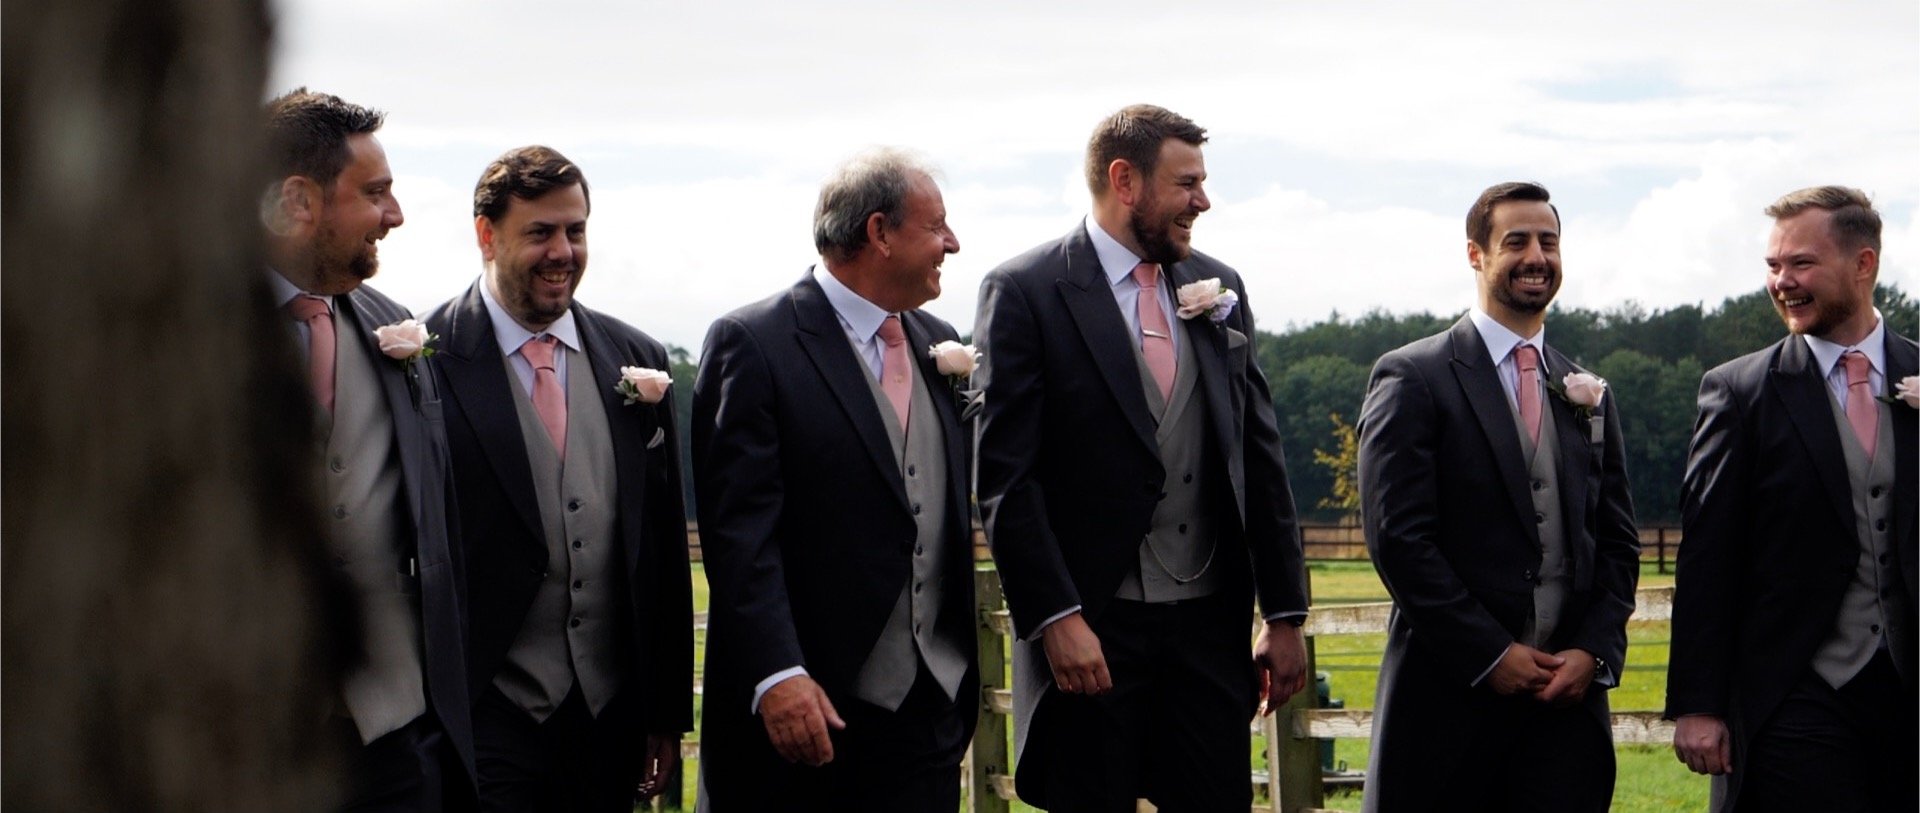 The groomsmen walking wedding video Essex.jpg